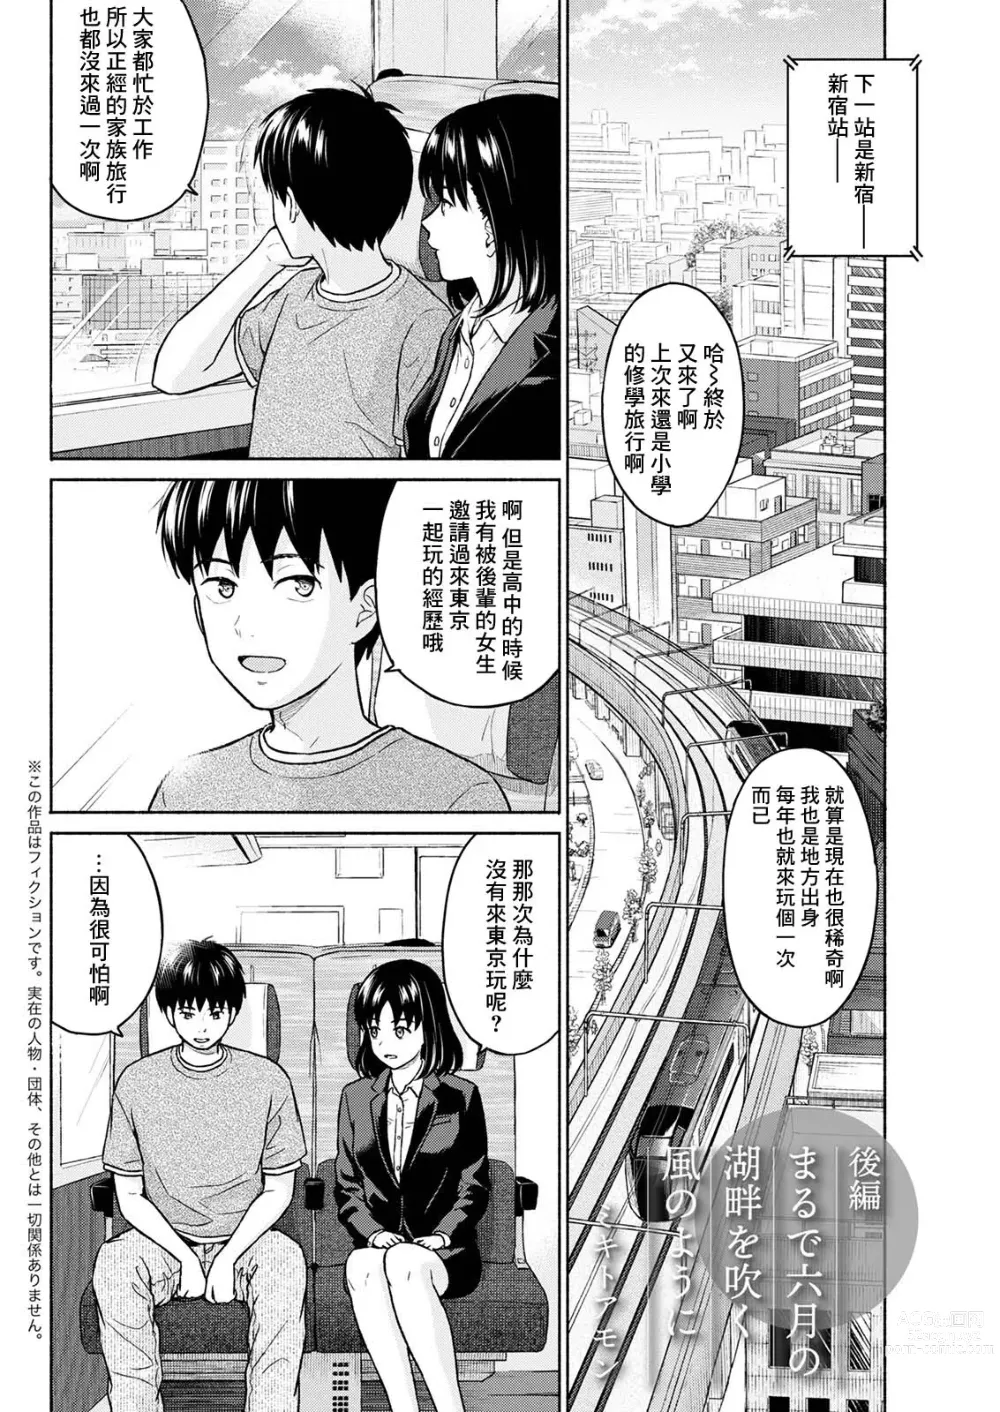 Page 2 of manga Marude Rokugatsu no Kohan o Fuku Kaze no you ni Kouhen